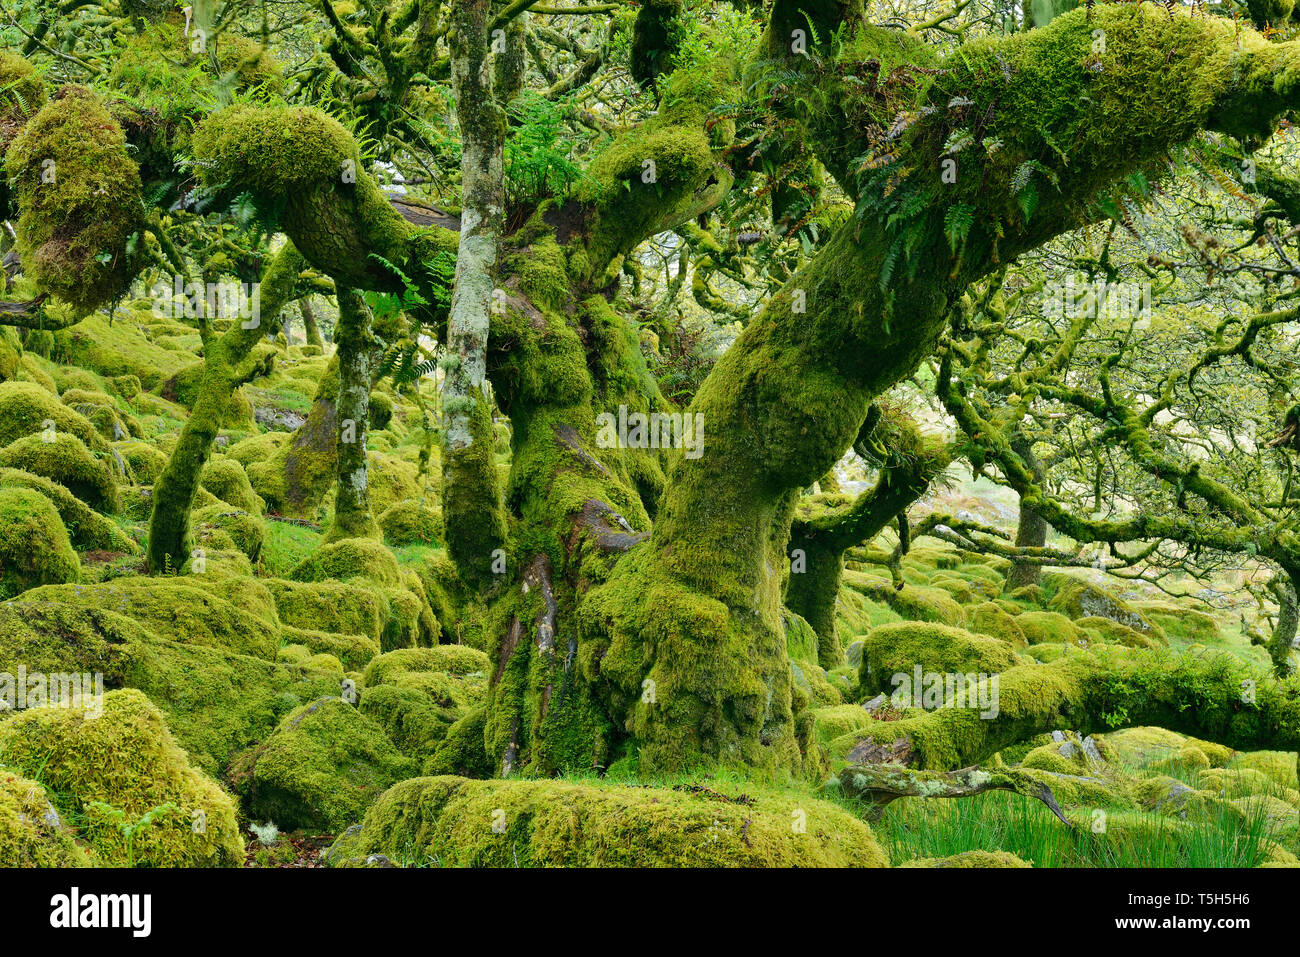 Regno Unito, Inghilterra, Parco Nazionale di Dartmoor, alberi e massi di granito sono ricoperta con moss Foto Stock